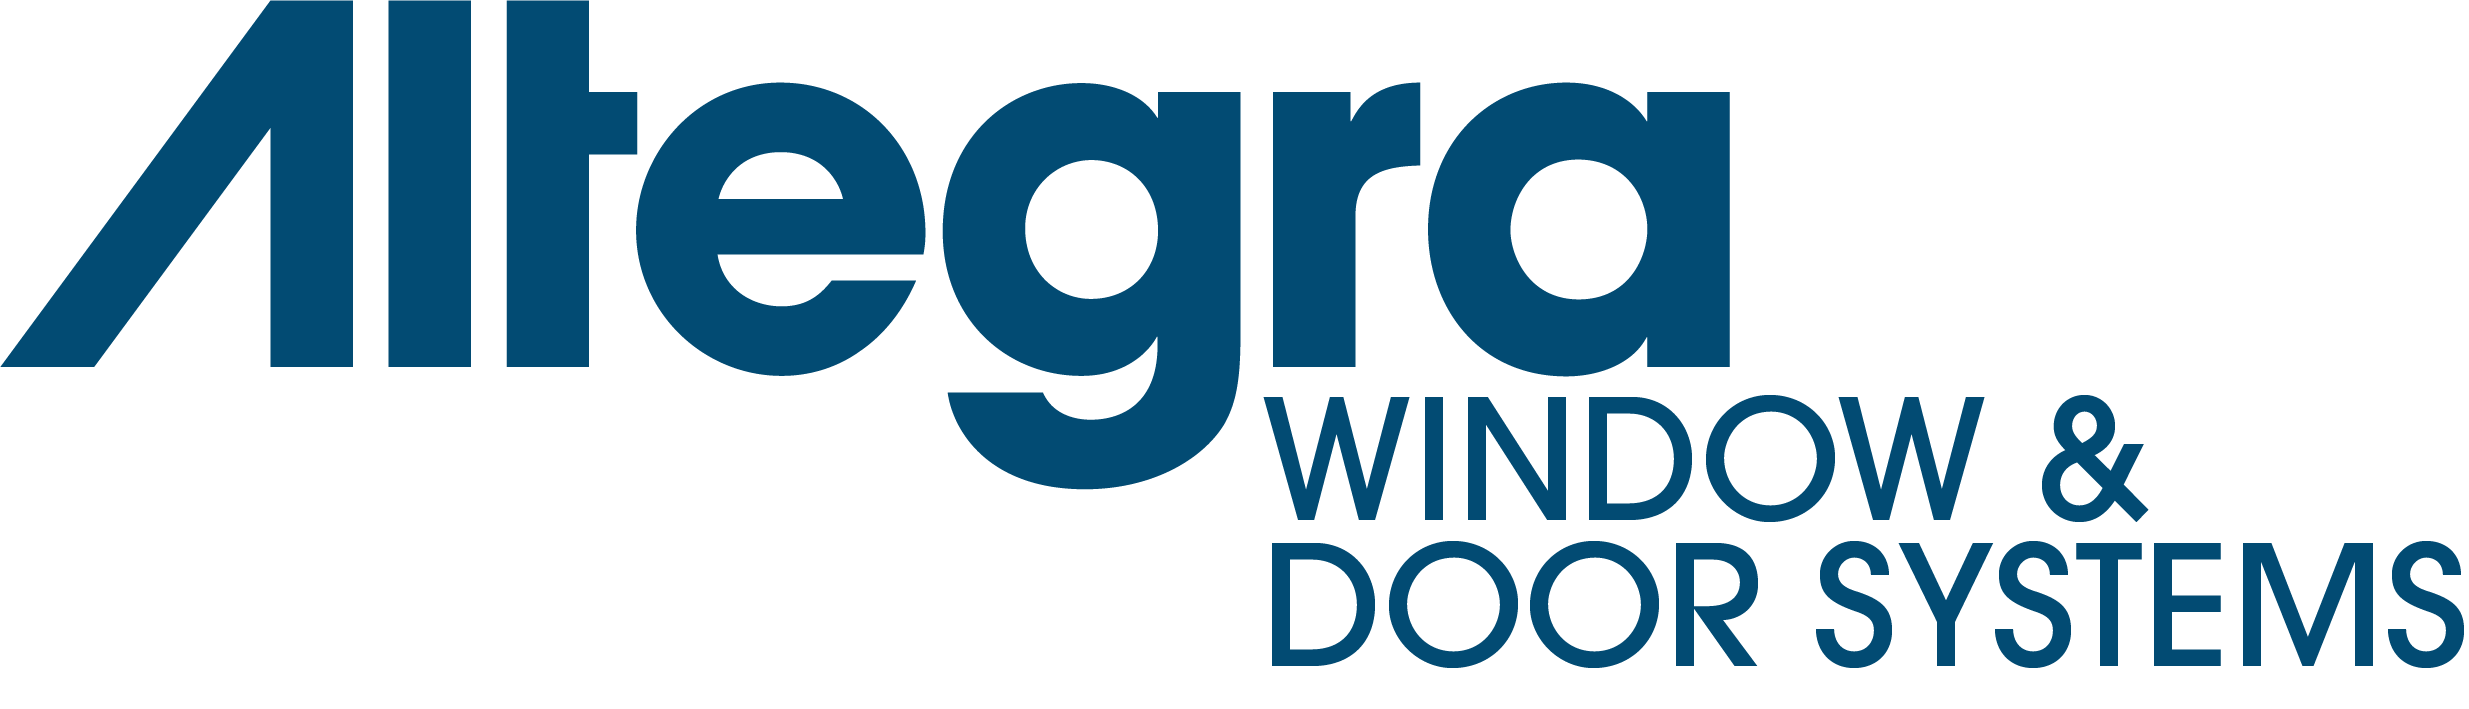 Altegra Window & Door Systems Blue@2x